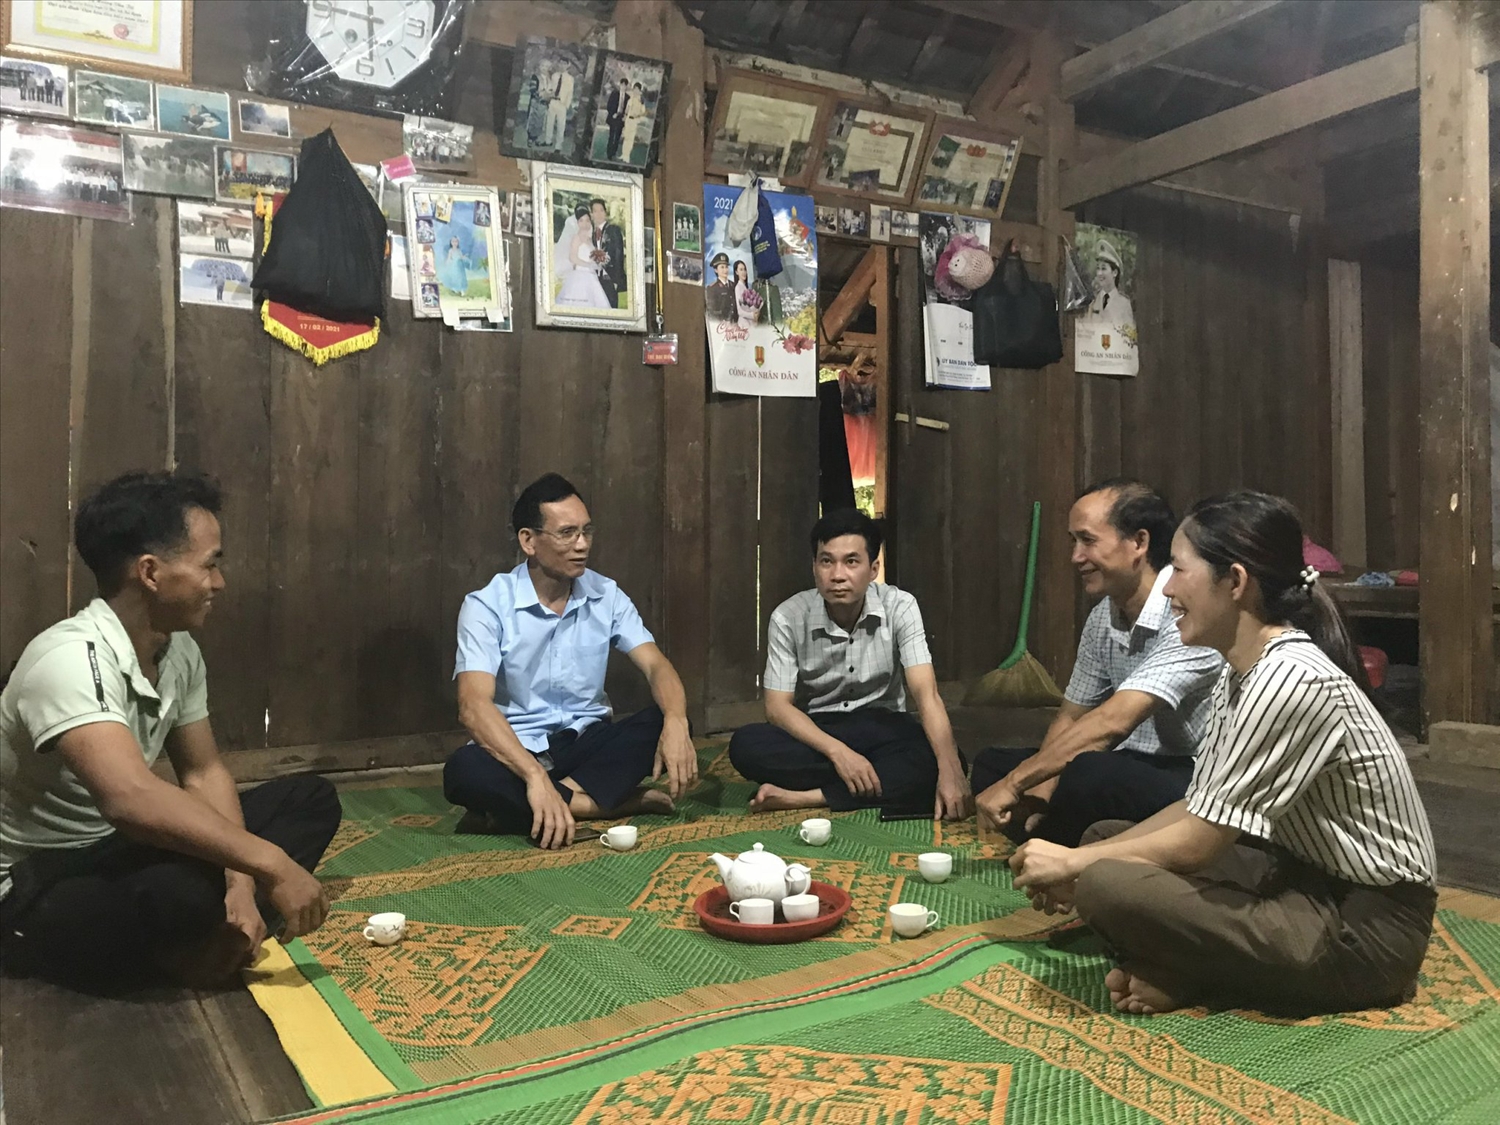 Ông Hoàng Văn Chính (người mặc áo xanh), Phó Trưởng Ban Dân tộc tỉnh Thái Nguyên cùng Người có uy tín trong đồng bào DTTS thăm hỏi gia đình đồng bào Mông tại xóm Mỏ Chì, xã Cúc Đường, huyện Võ Nhai.